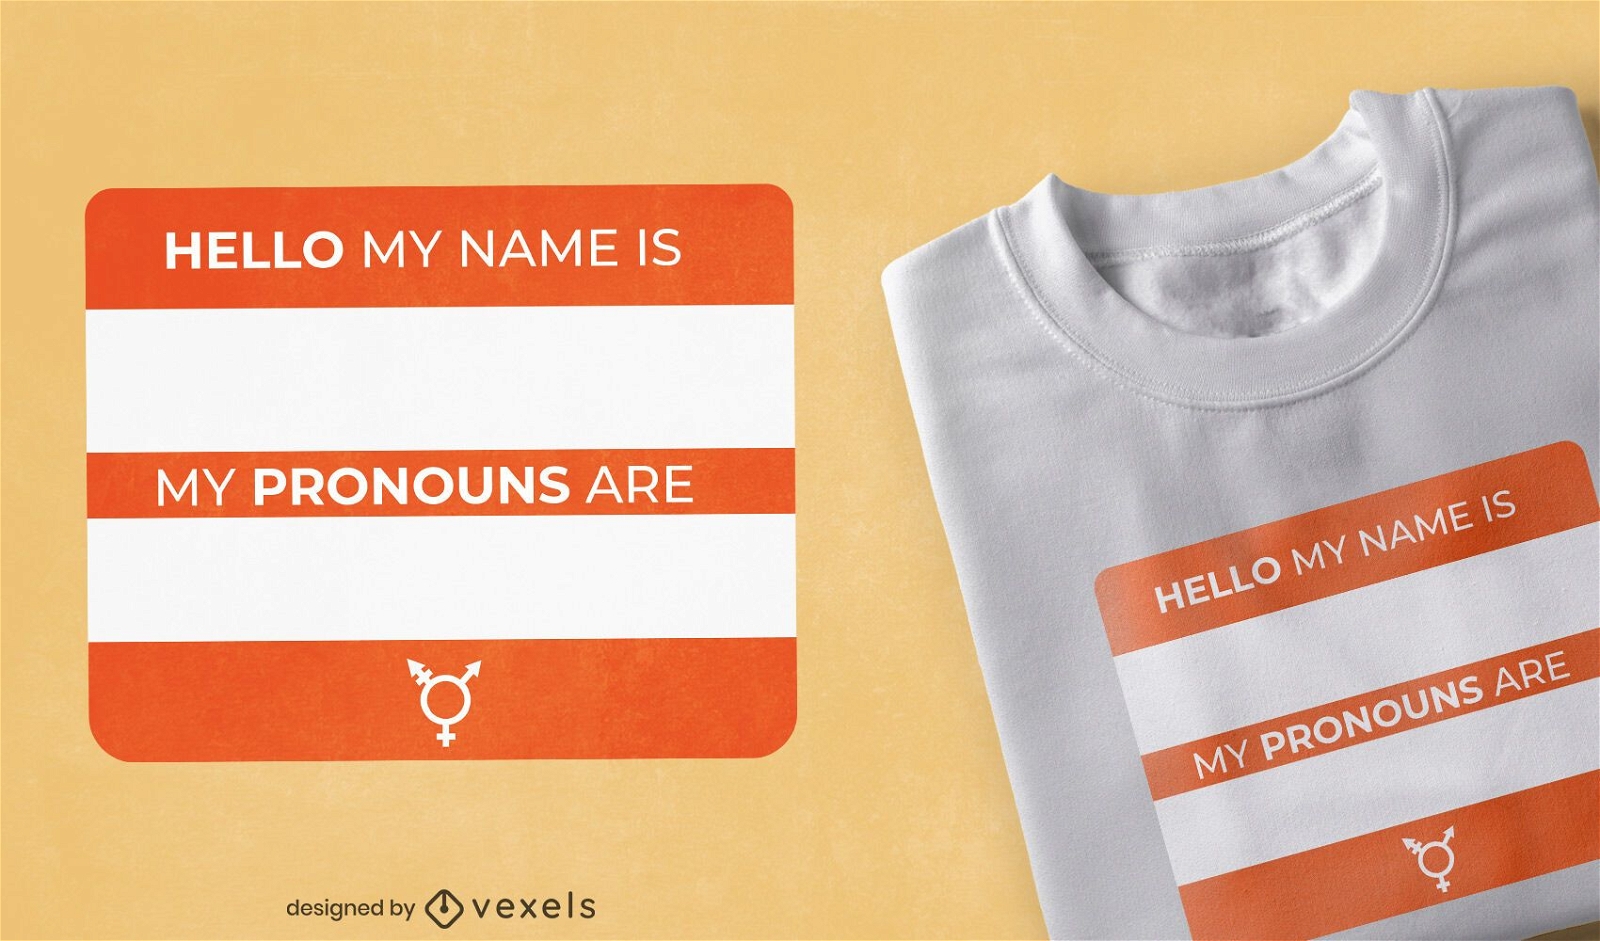 Dise?o de camiseta con etiqueta de nombre y pronombres.